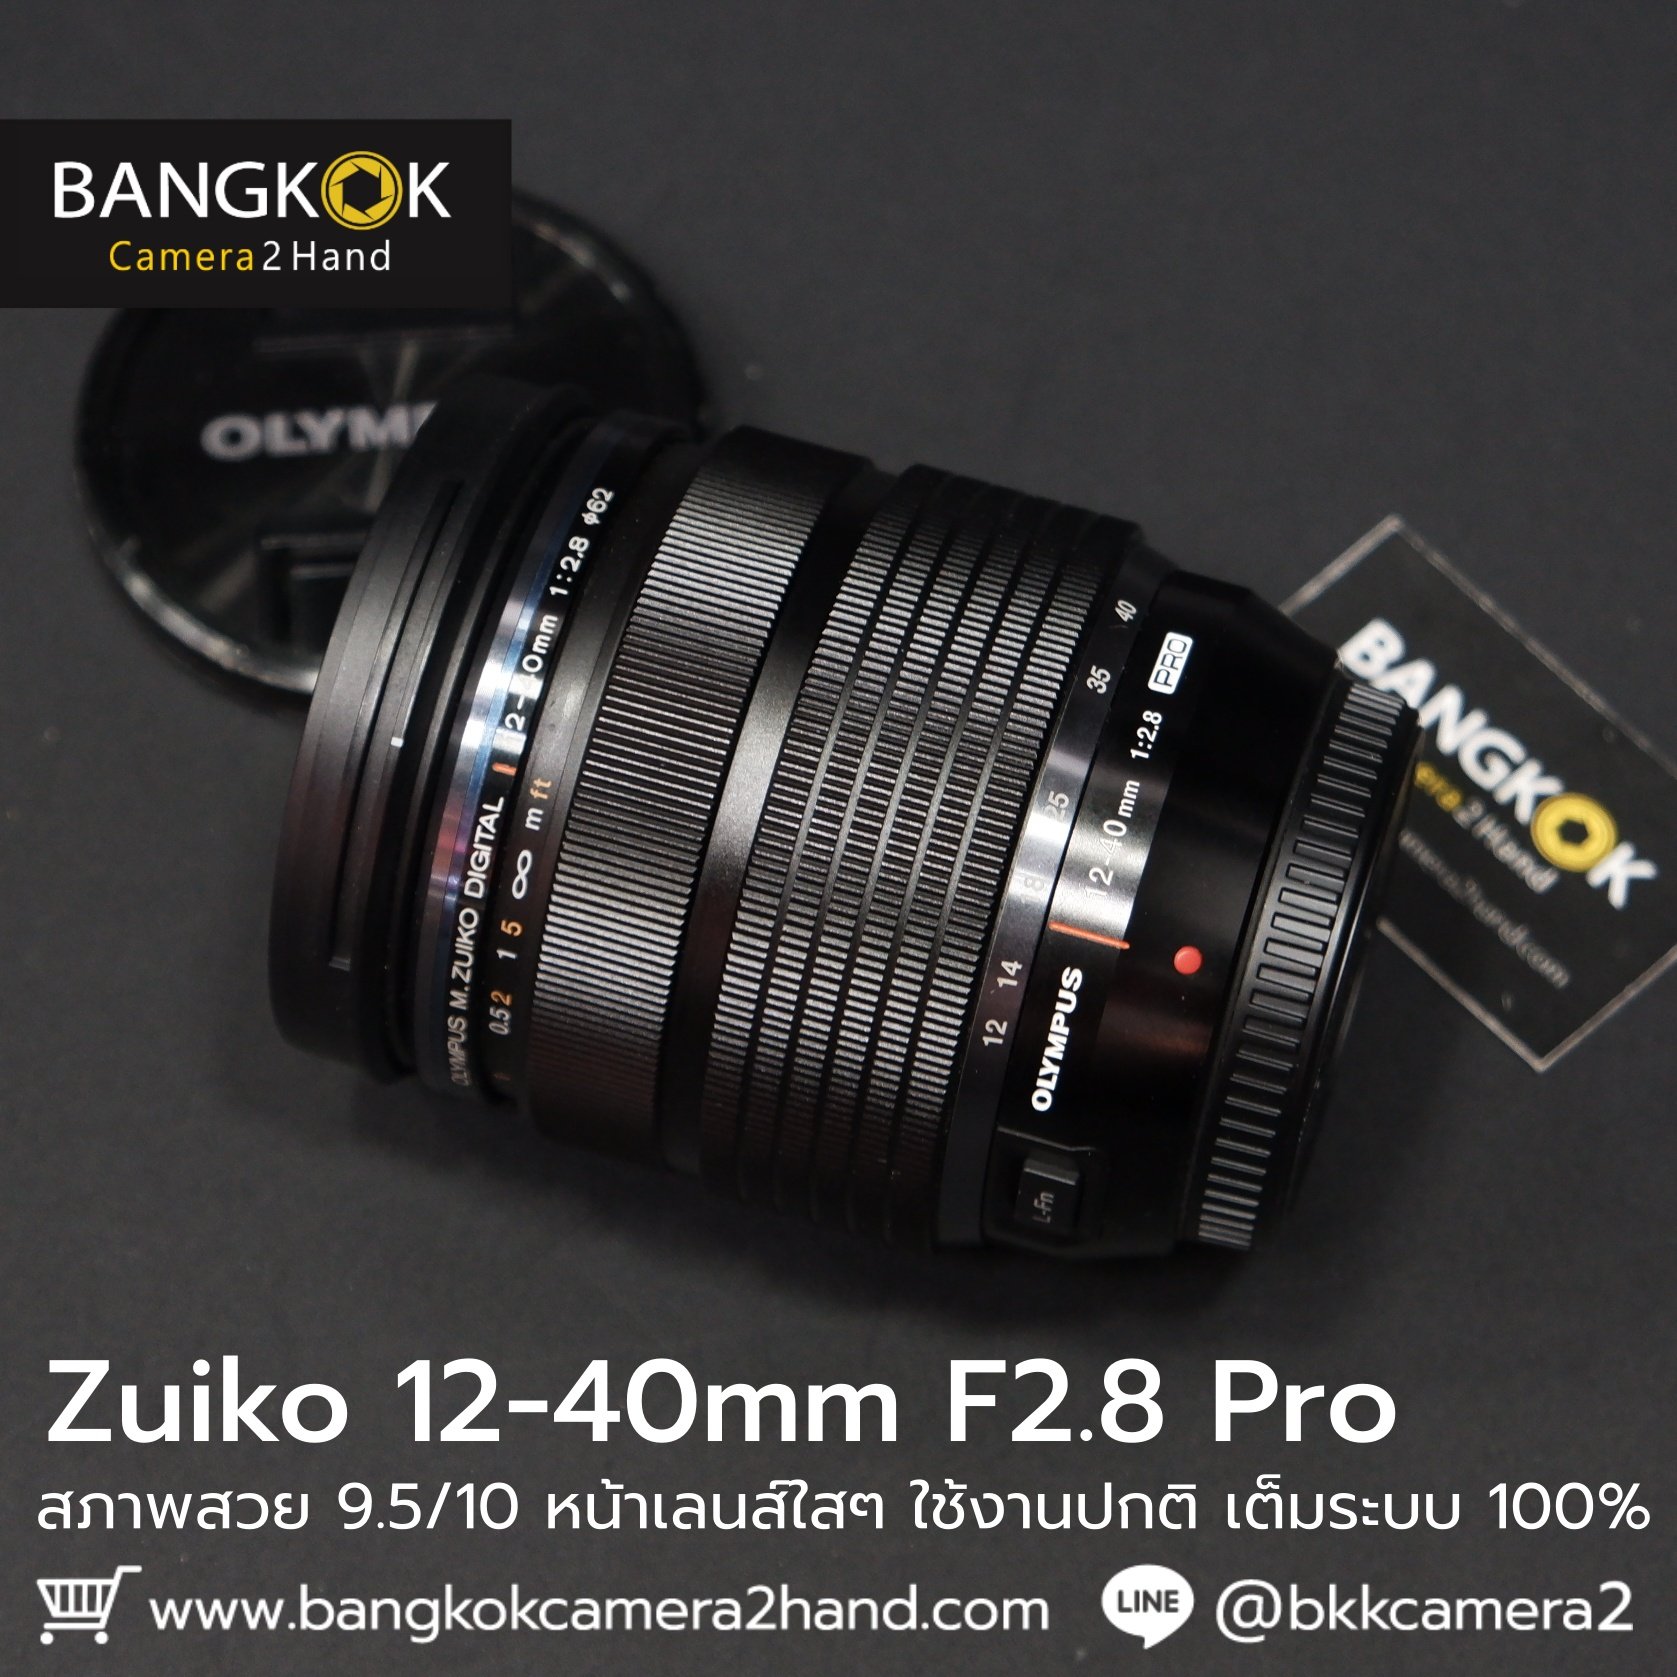 Zuiko 12-40 F2.8 Pro หน้าเลนส์ใสๆ